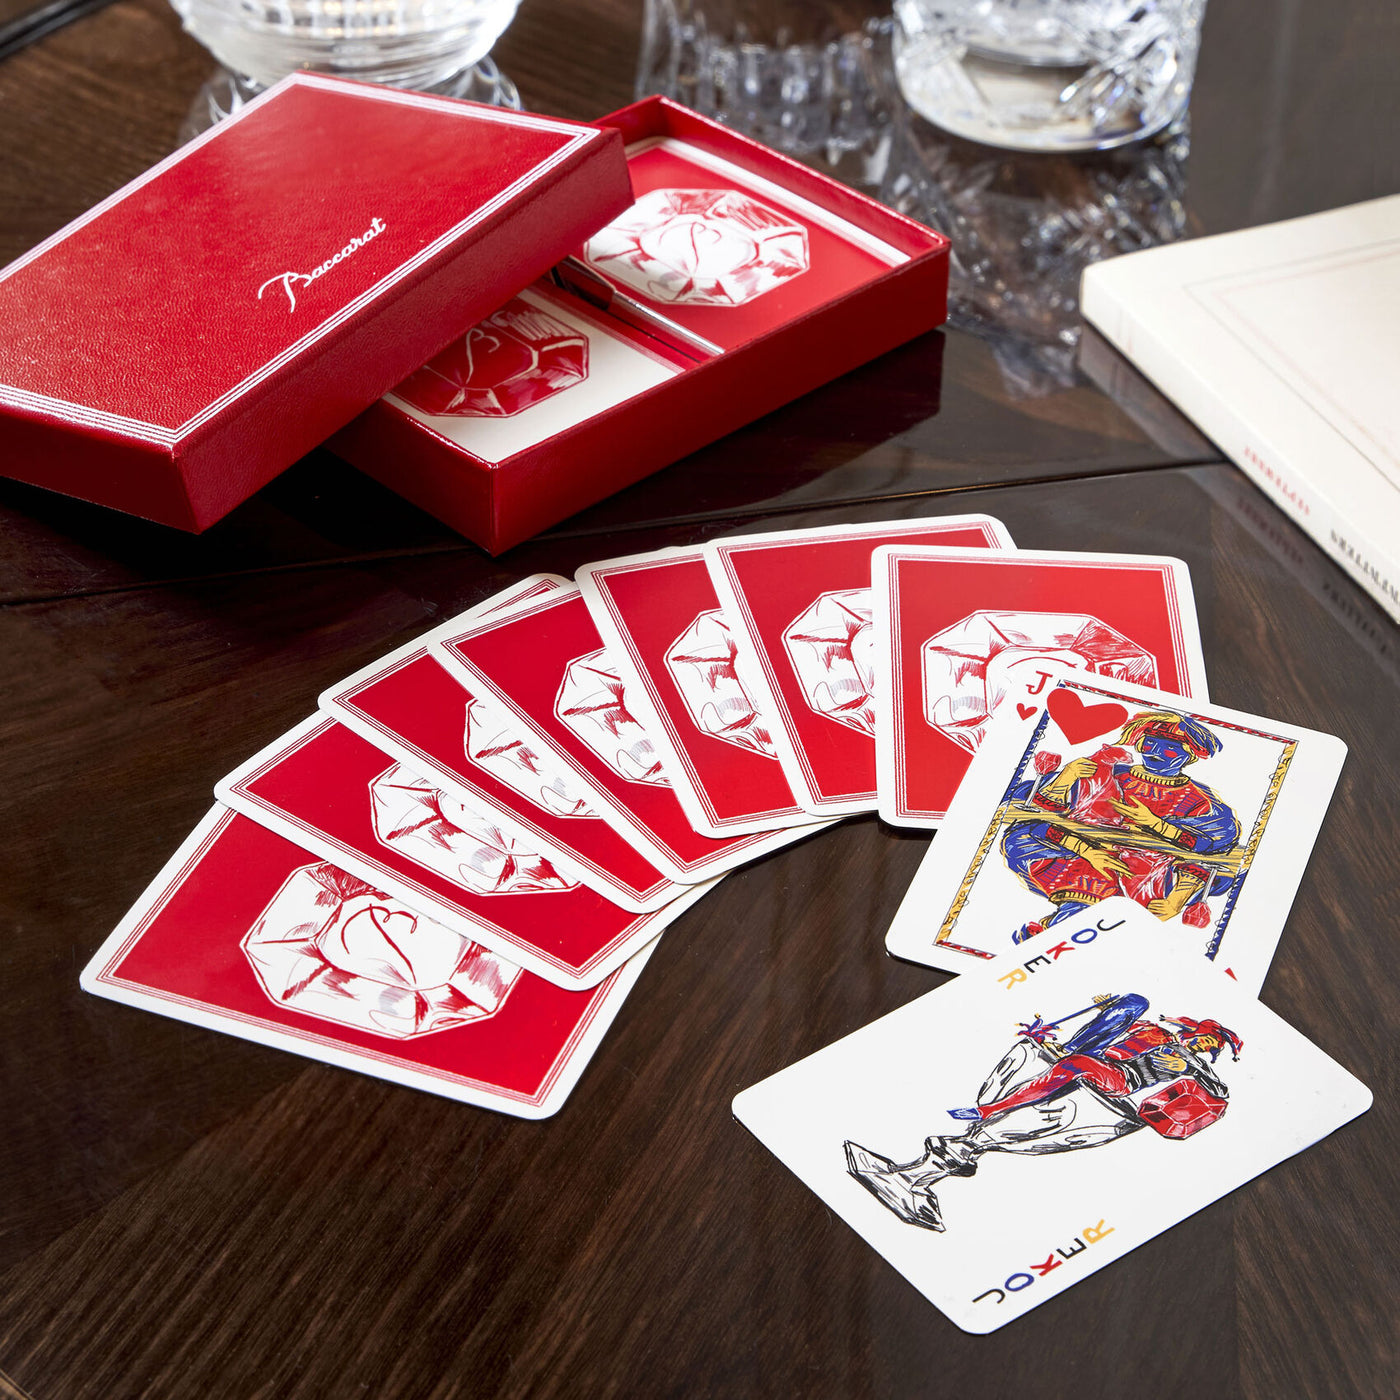 Baccarat Poker Card Set